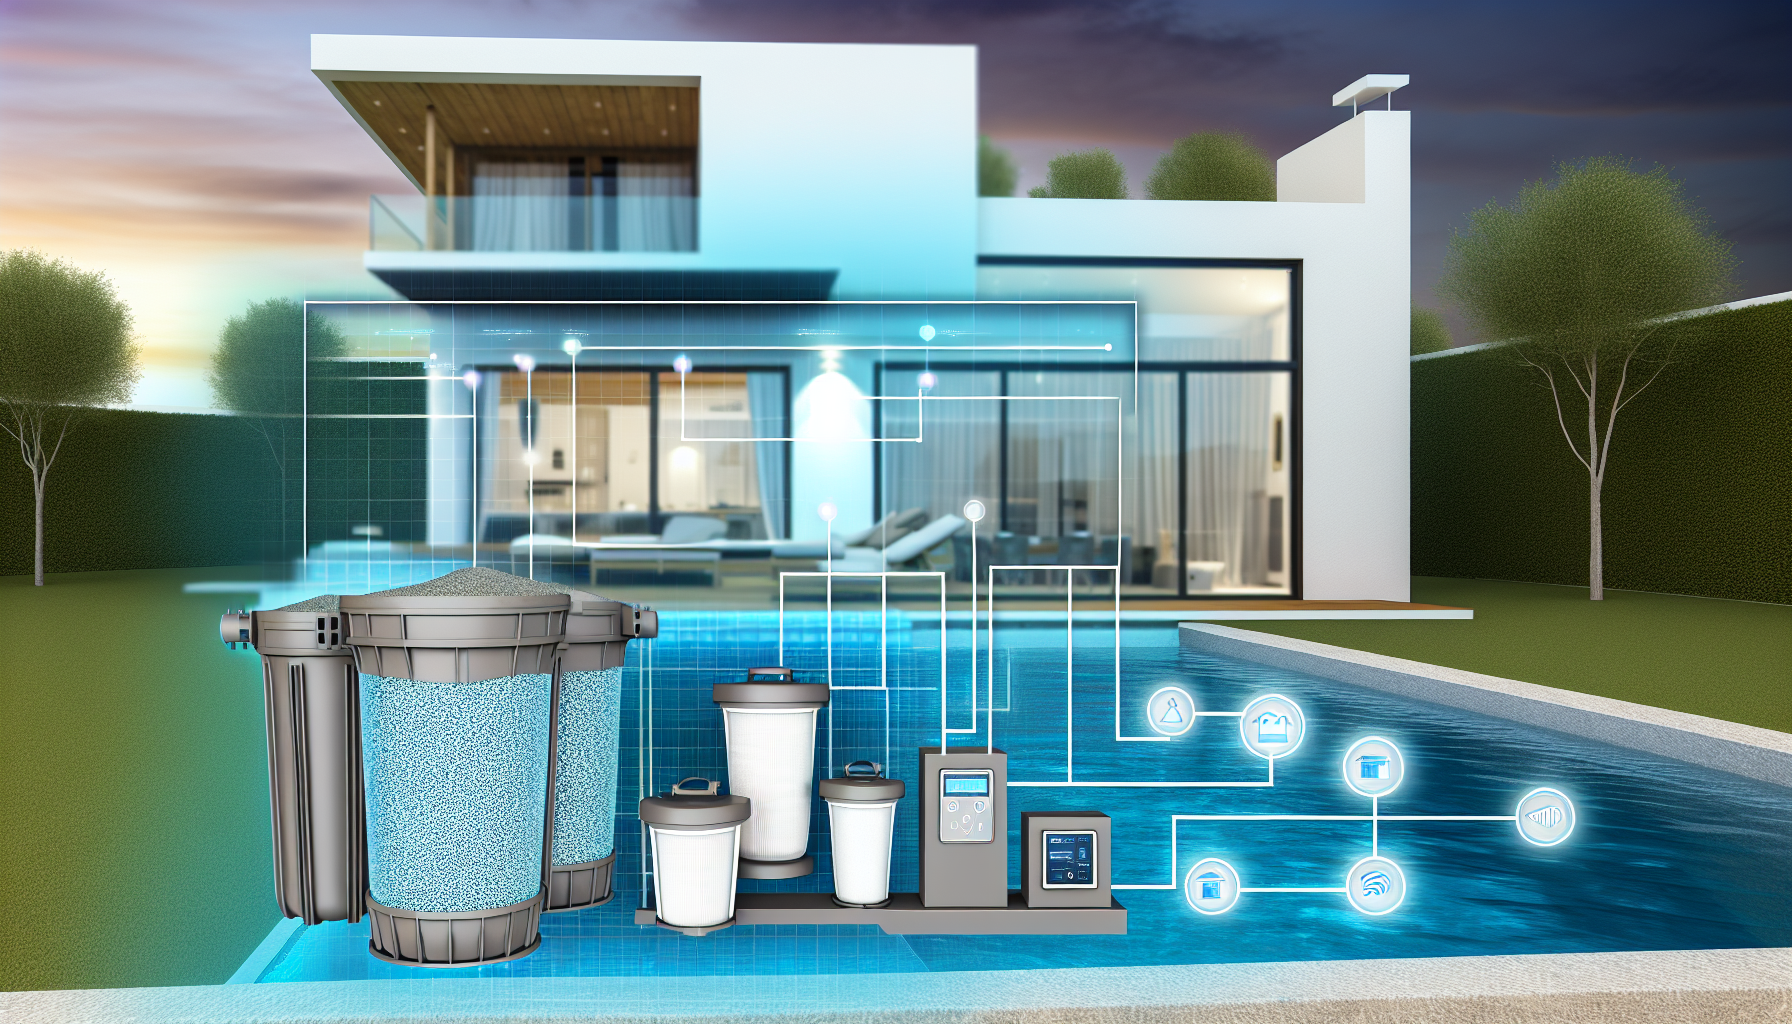 Moderne Pool- und Hausautomation mit verschiedenen Steuerungselementen und -geräten im Vordergrund, angezeigt durch digitale Symbole und Linien.